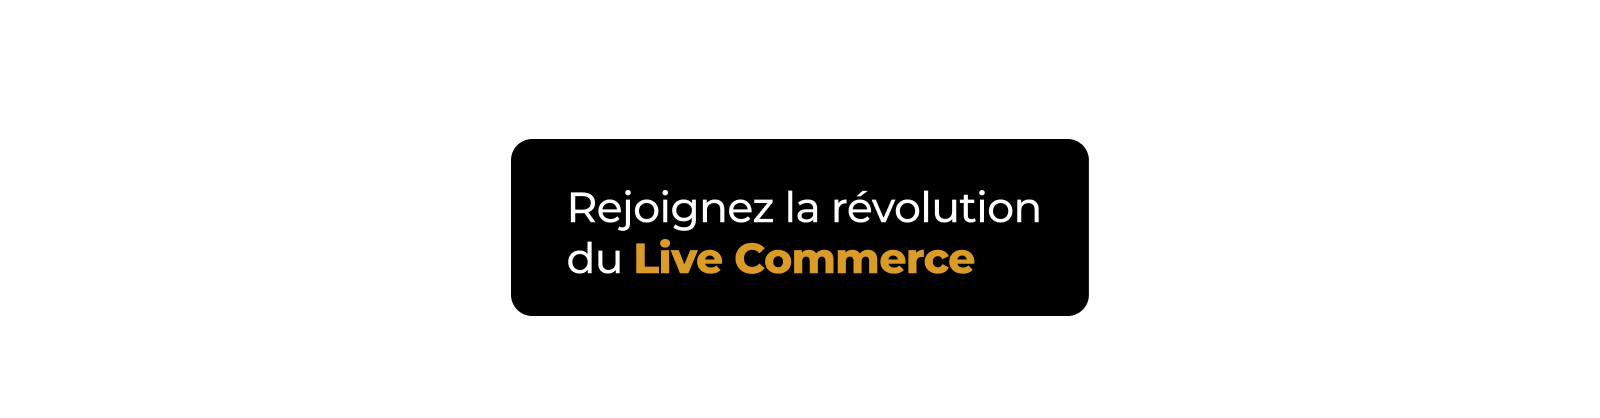 rejoignez la revolution live commerce